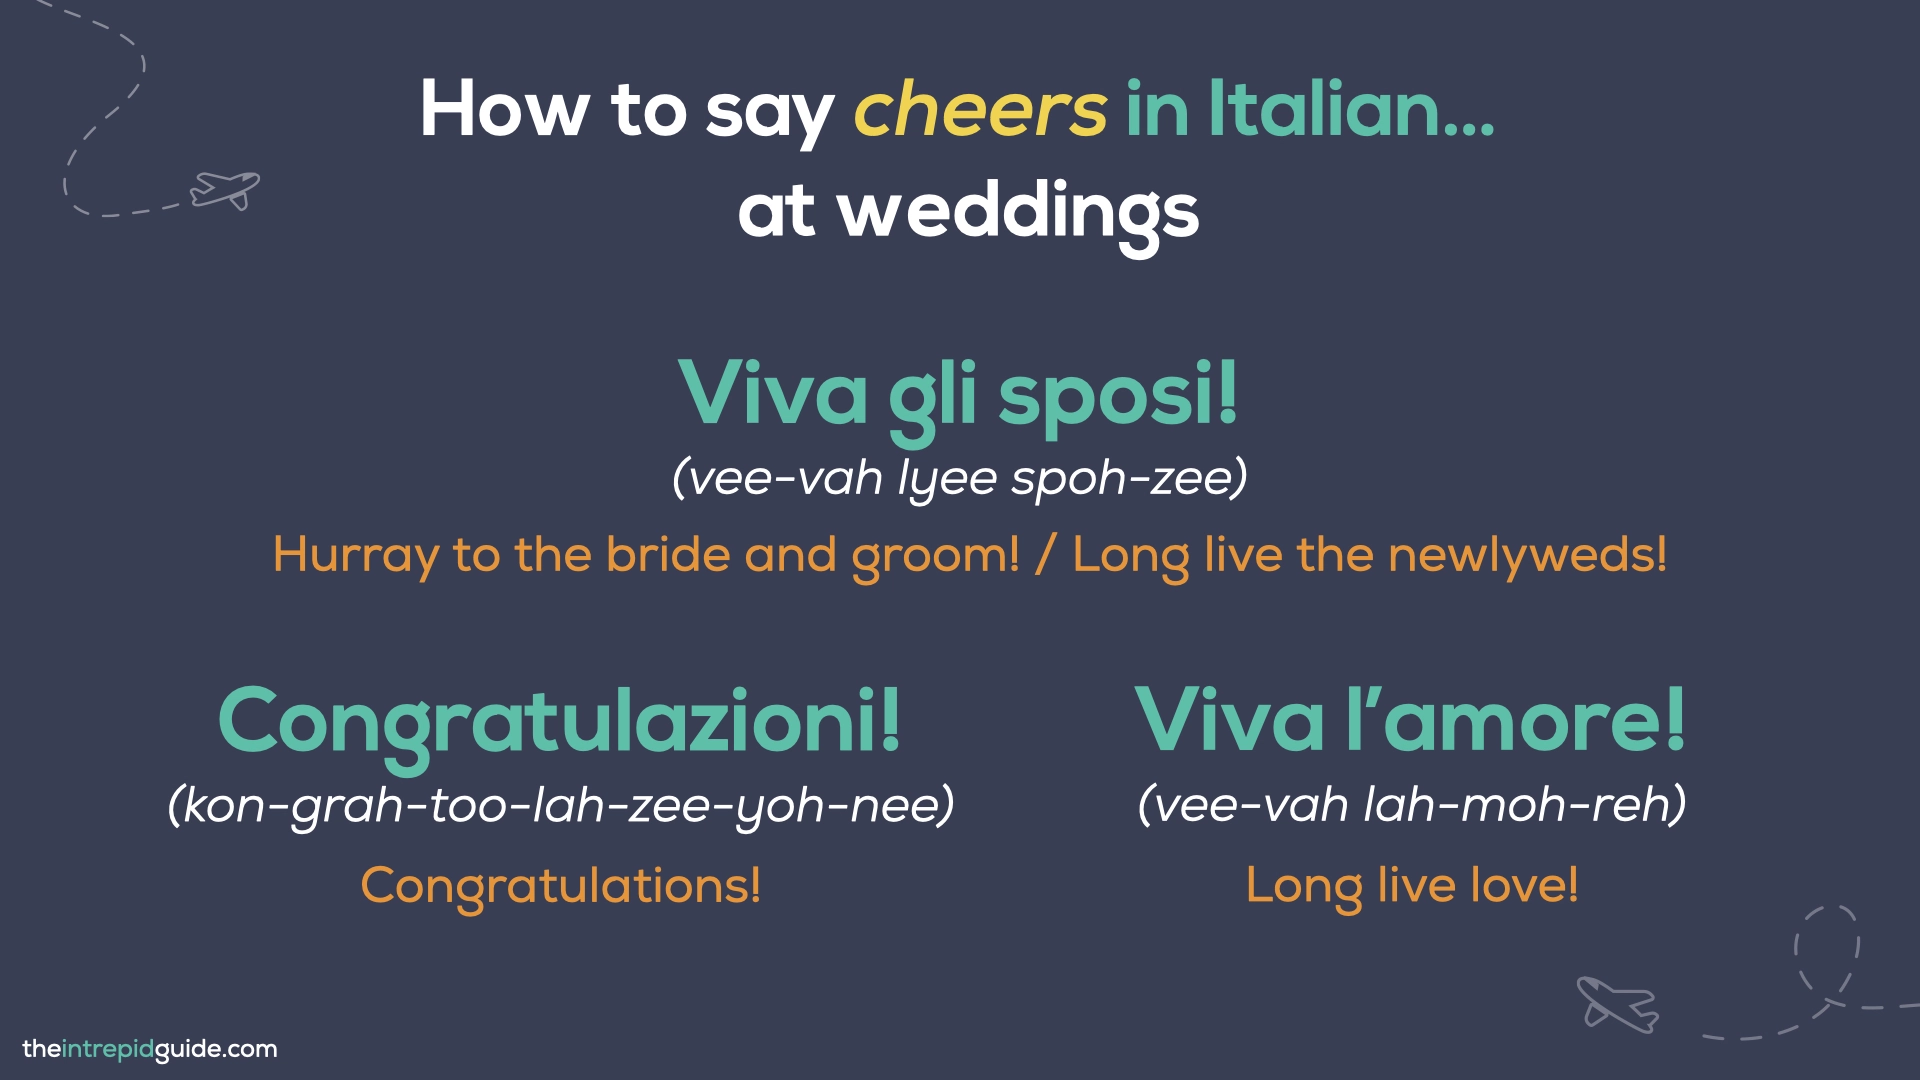 How to say cheers in Italian - Viva gli sposi, Congratulazioni, Viva l'amore